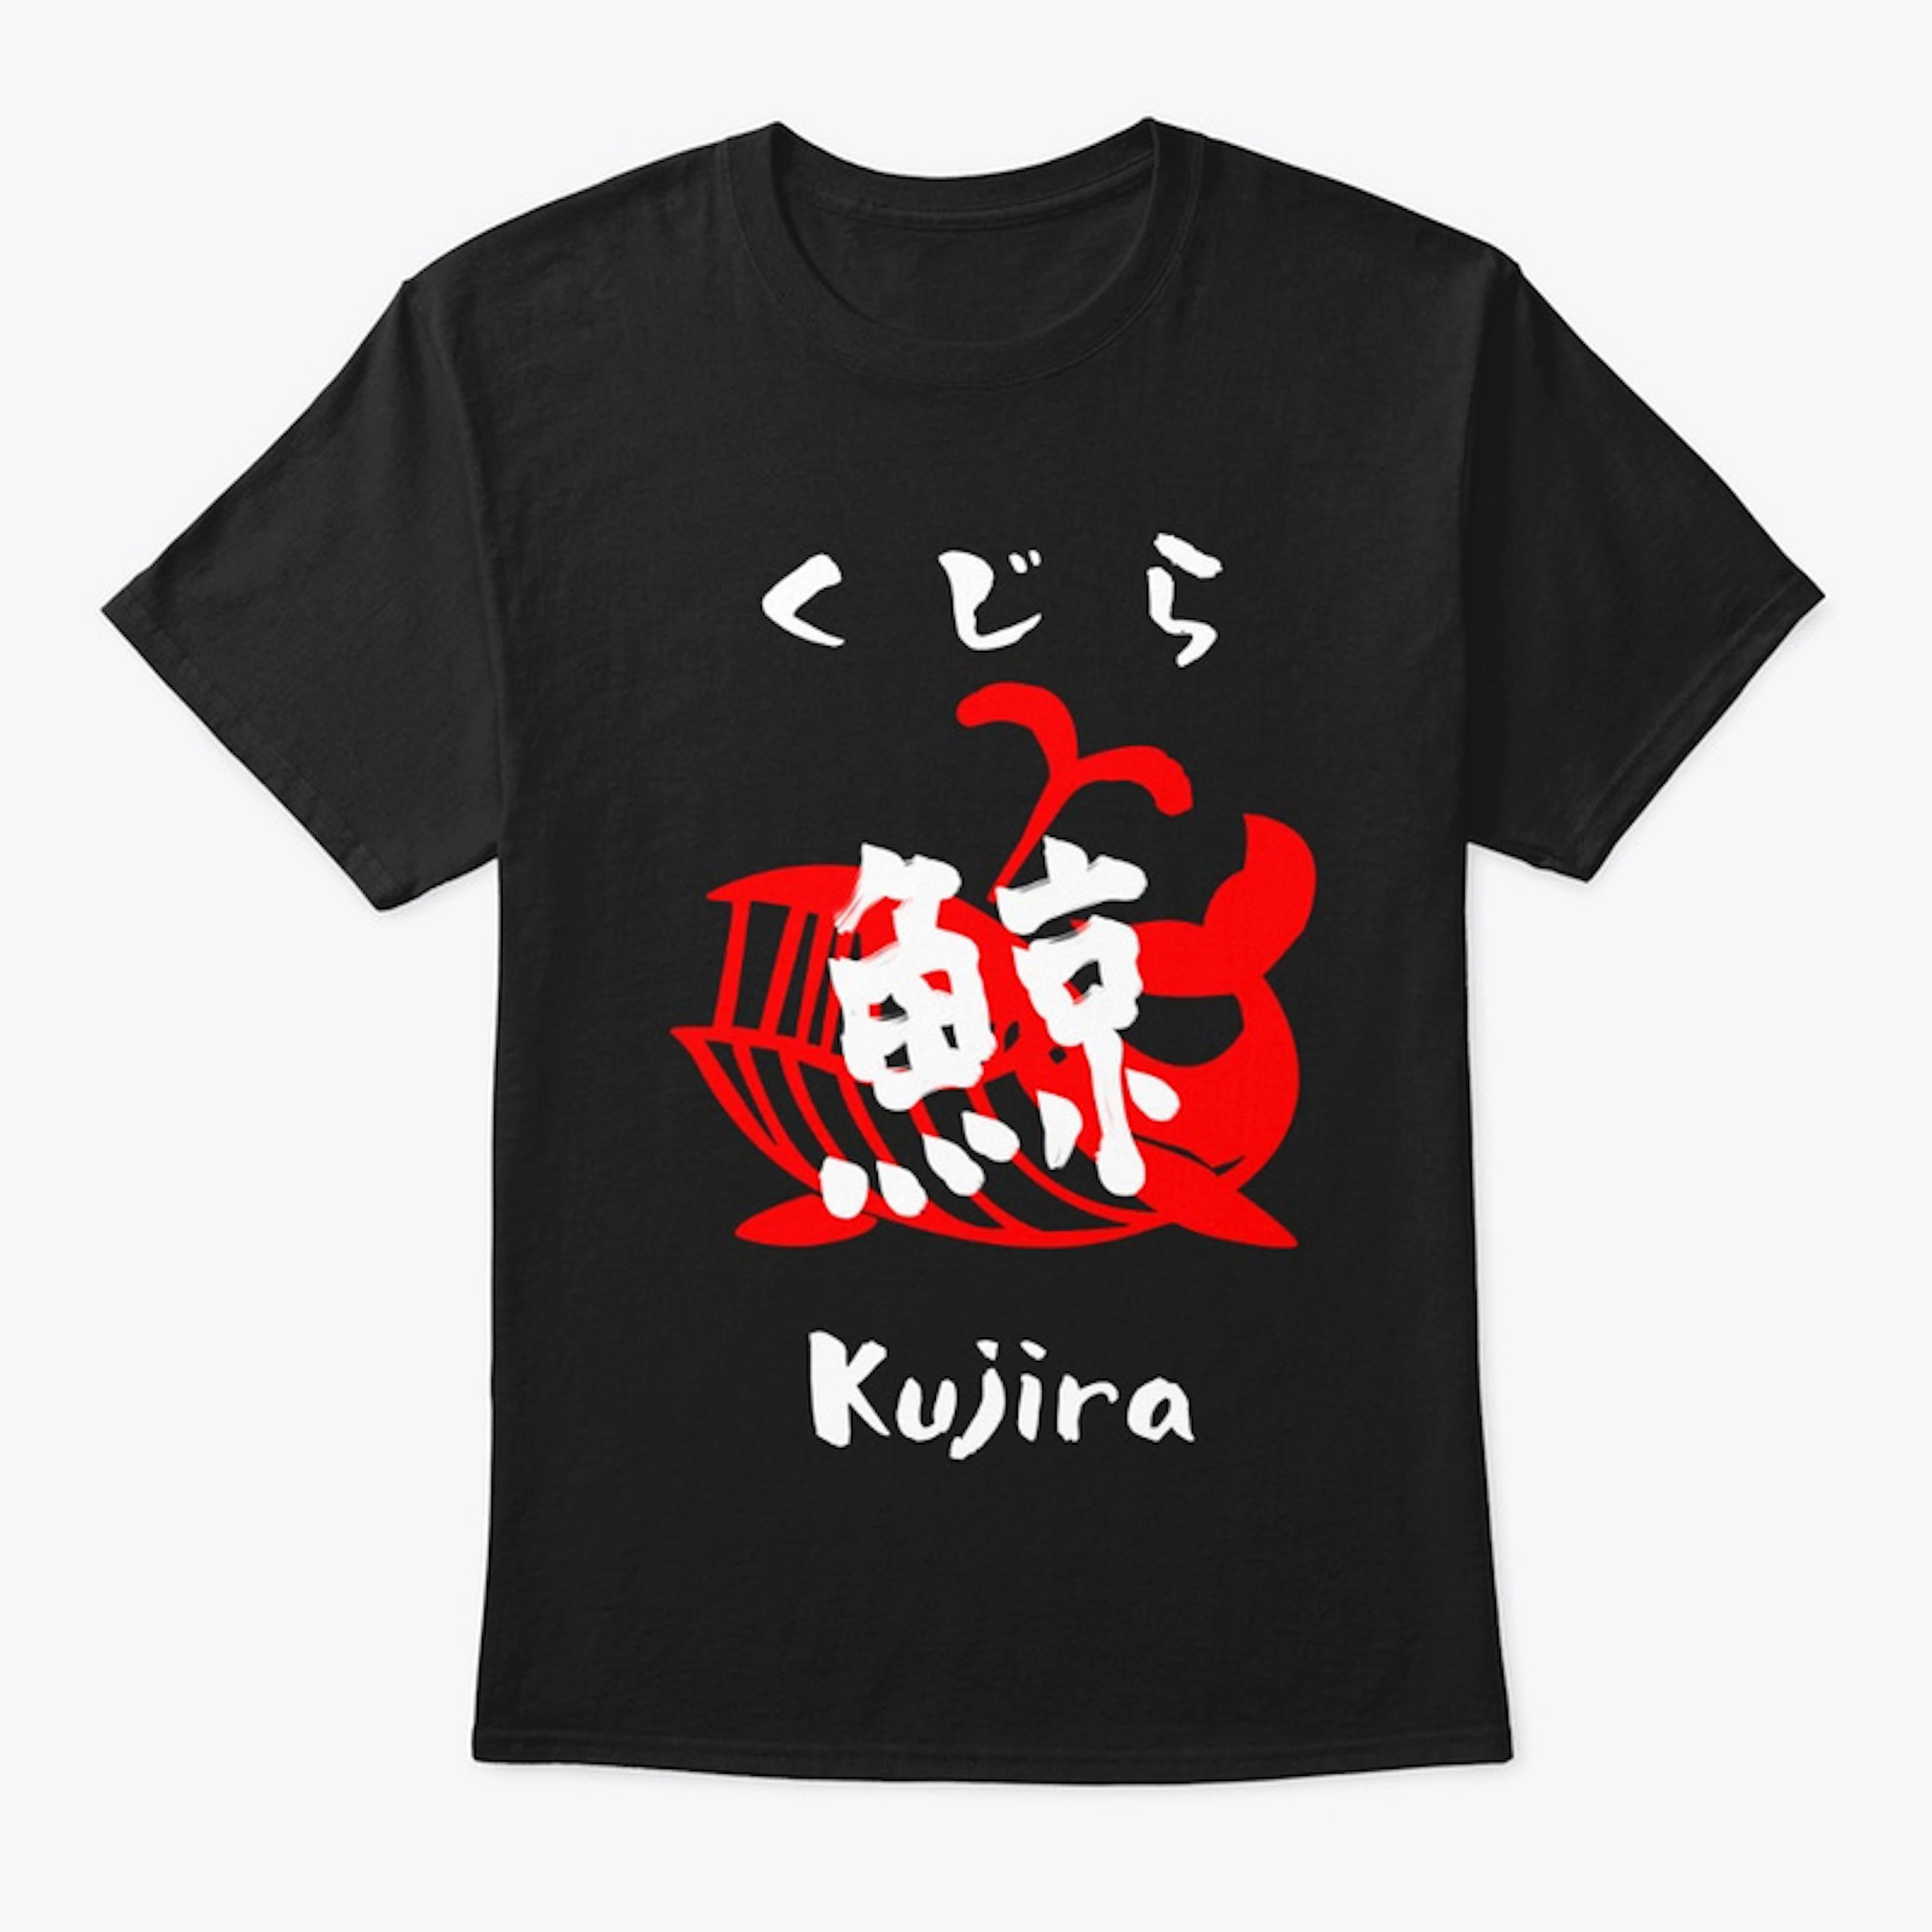 Kujira "Whale" T-shirts